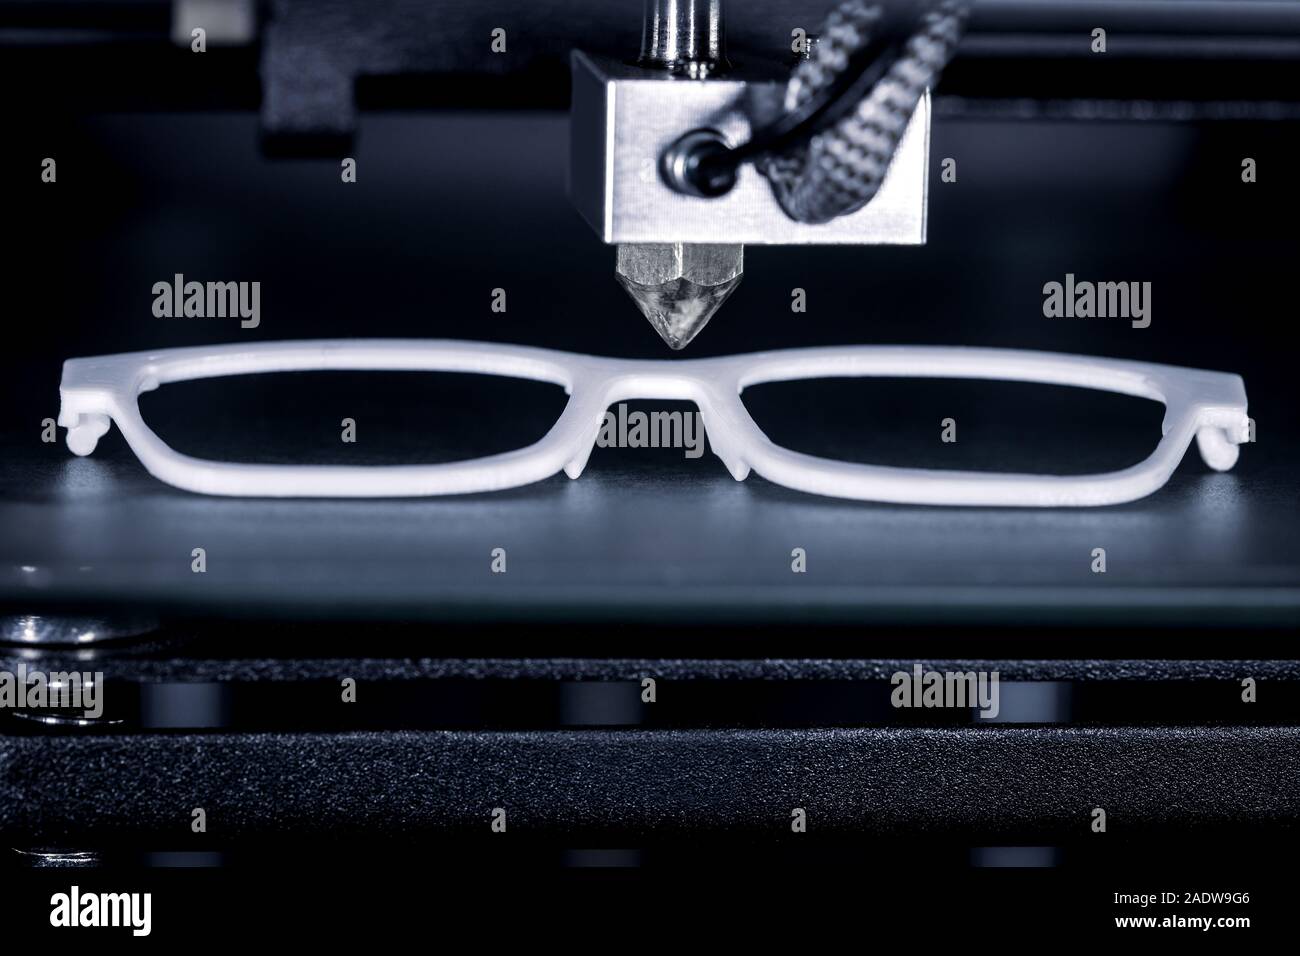 Billige brillen -Fotos und -Bildmaterial in hoher Auflösung – Alamy